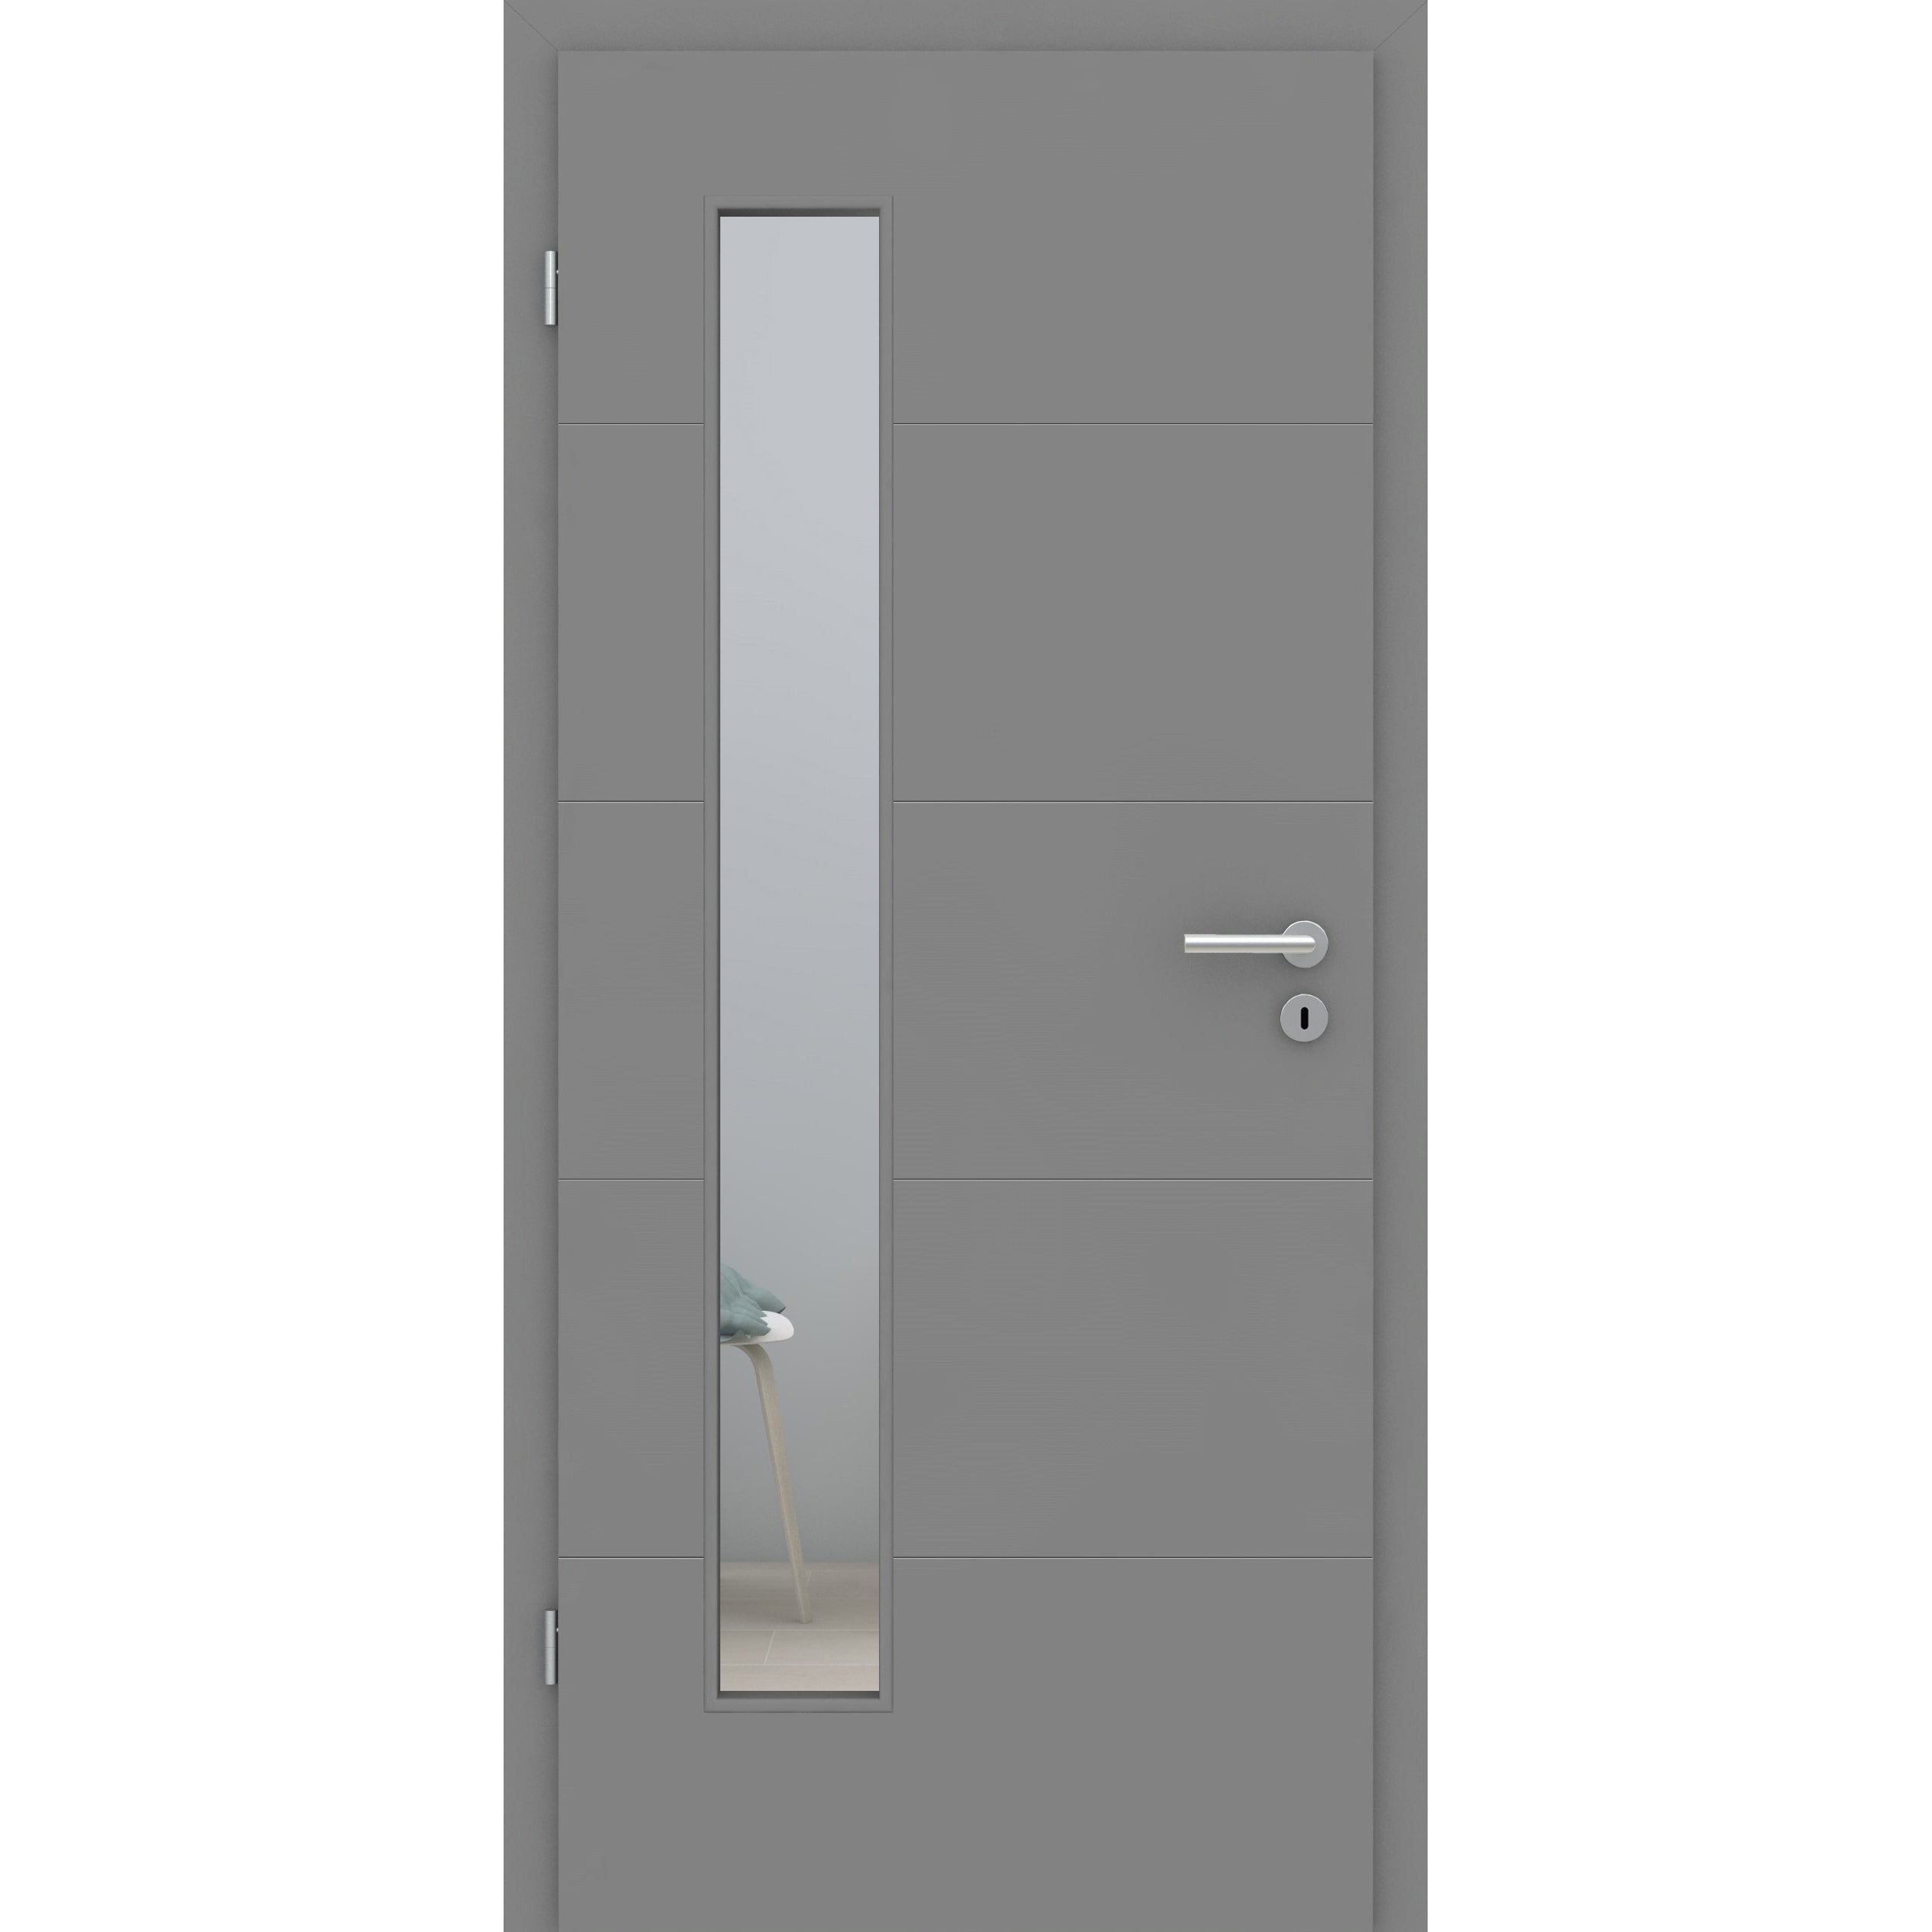 Zimmertür mit Zarge und Lichtausschnitt grau 4 Rillen quer Designkante - Modell Designtür Q47LAB